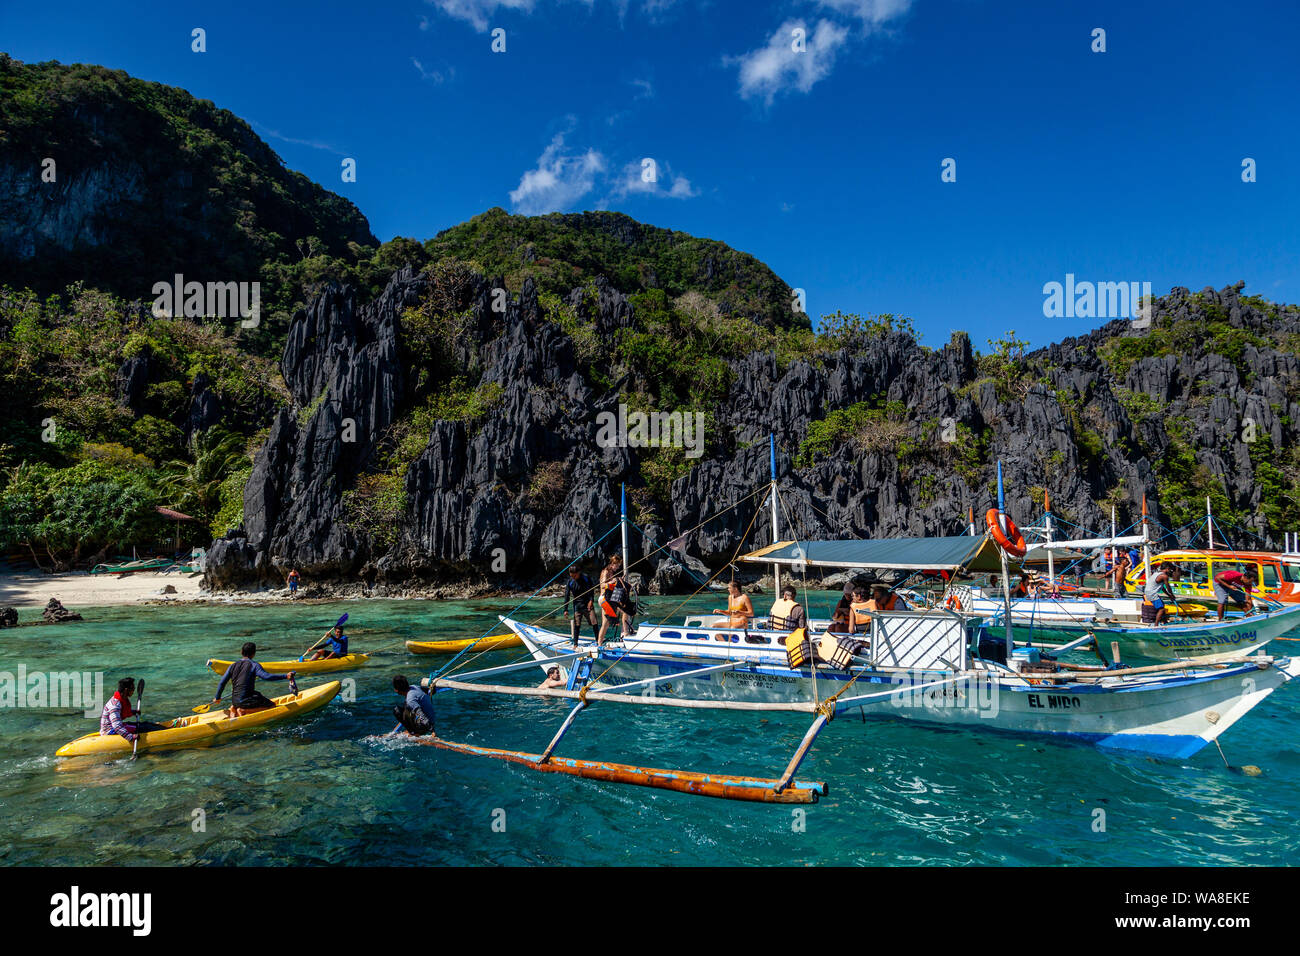 Traditional Wooden Banca Boats At The Small Lagoon, El Nido, Palawan, The Philippines Stock Photo